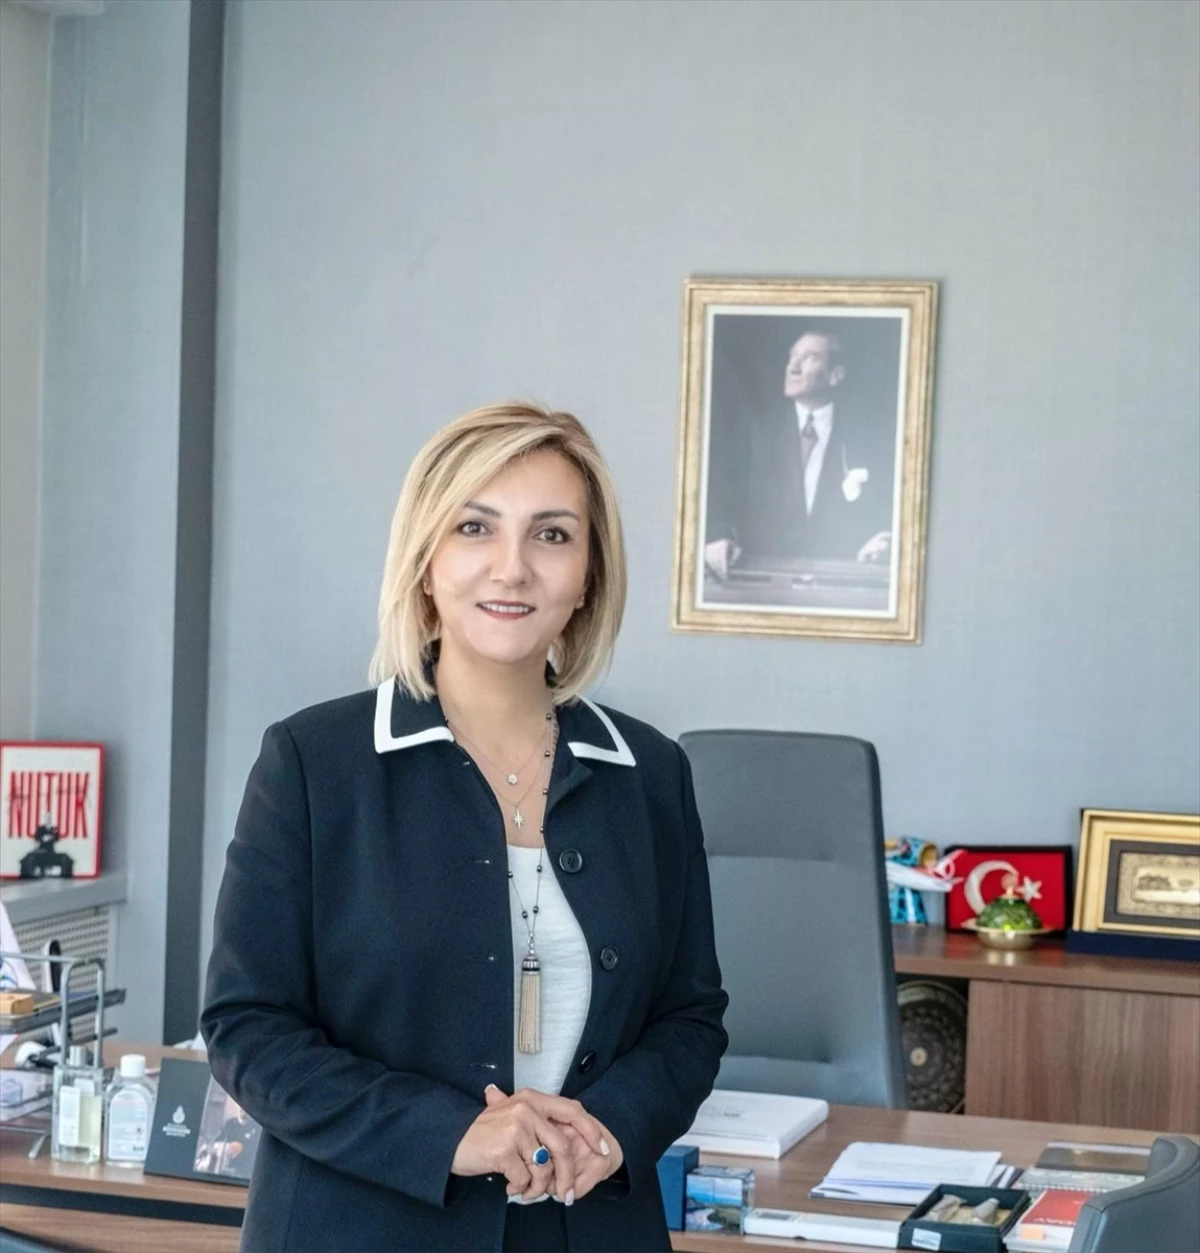 TÜRSAB Başkanı: Türkiye rezervasyonlarında önemli artışlar var